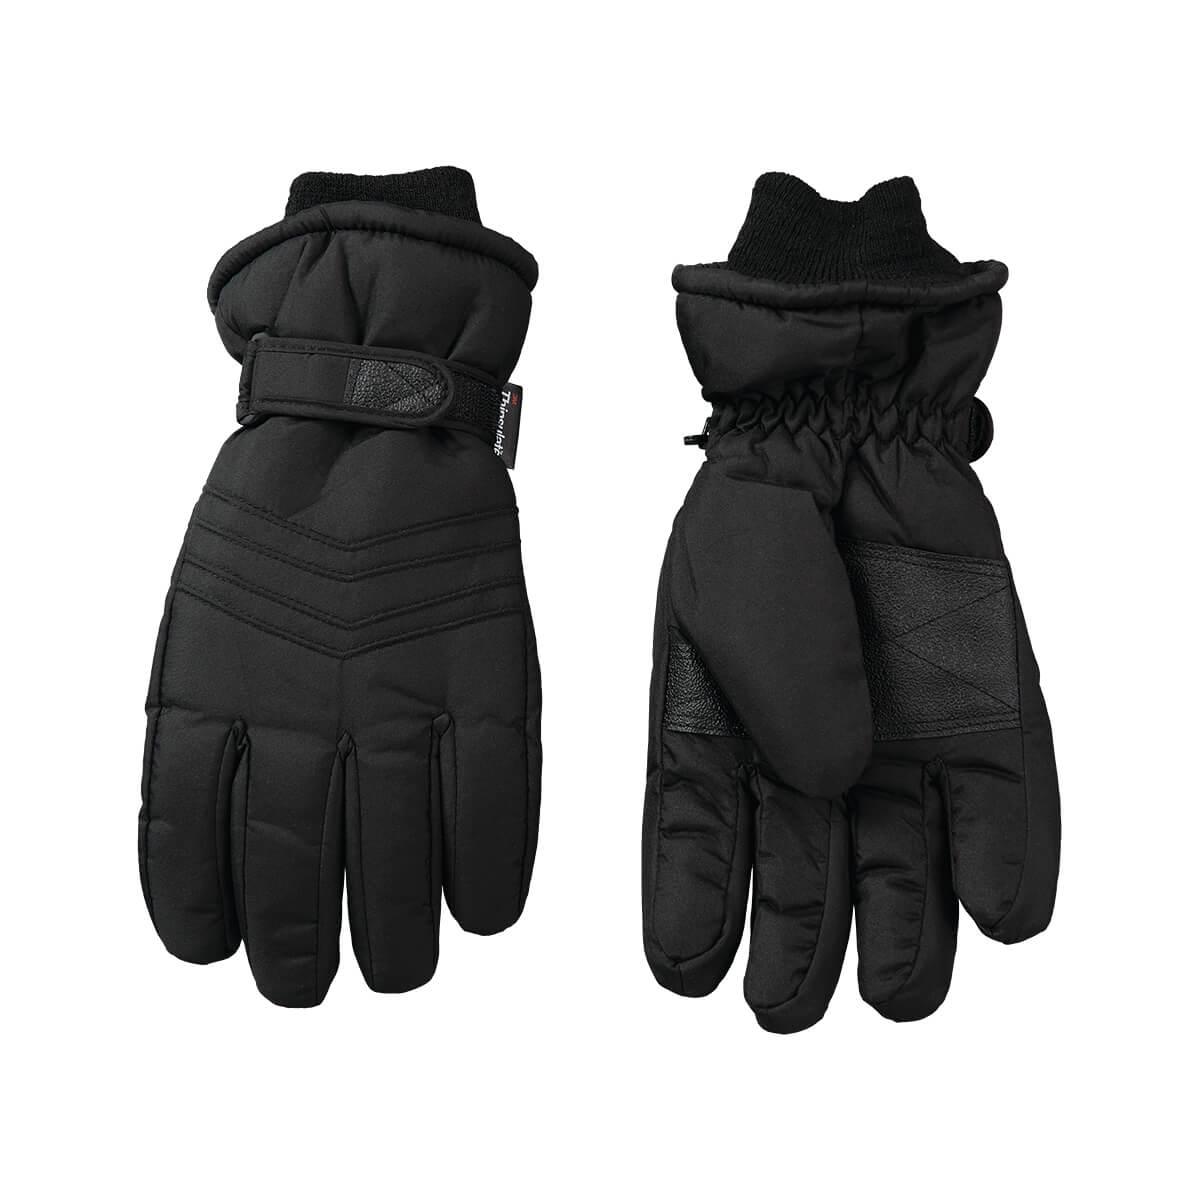  Men's Taslon Ski Gloves